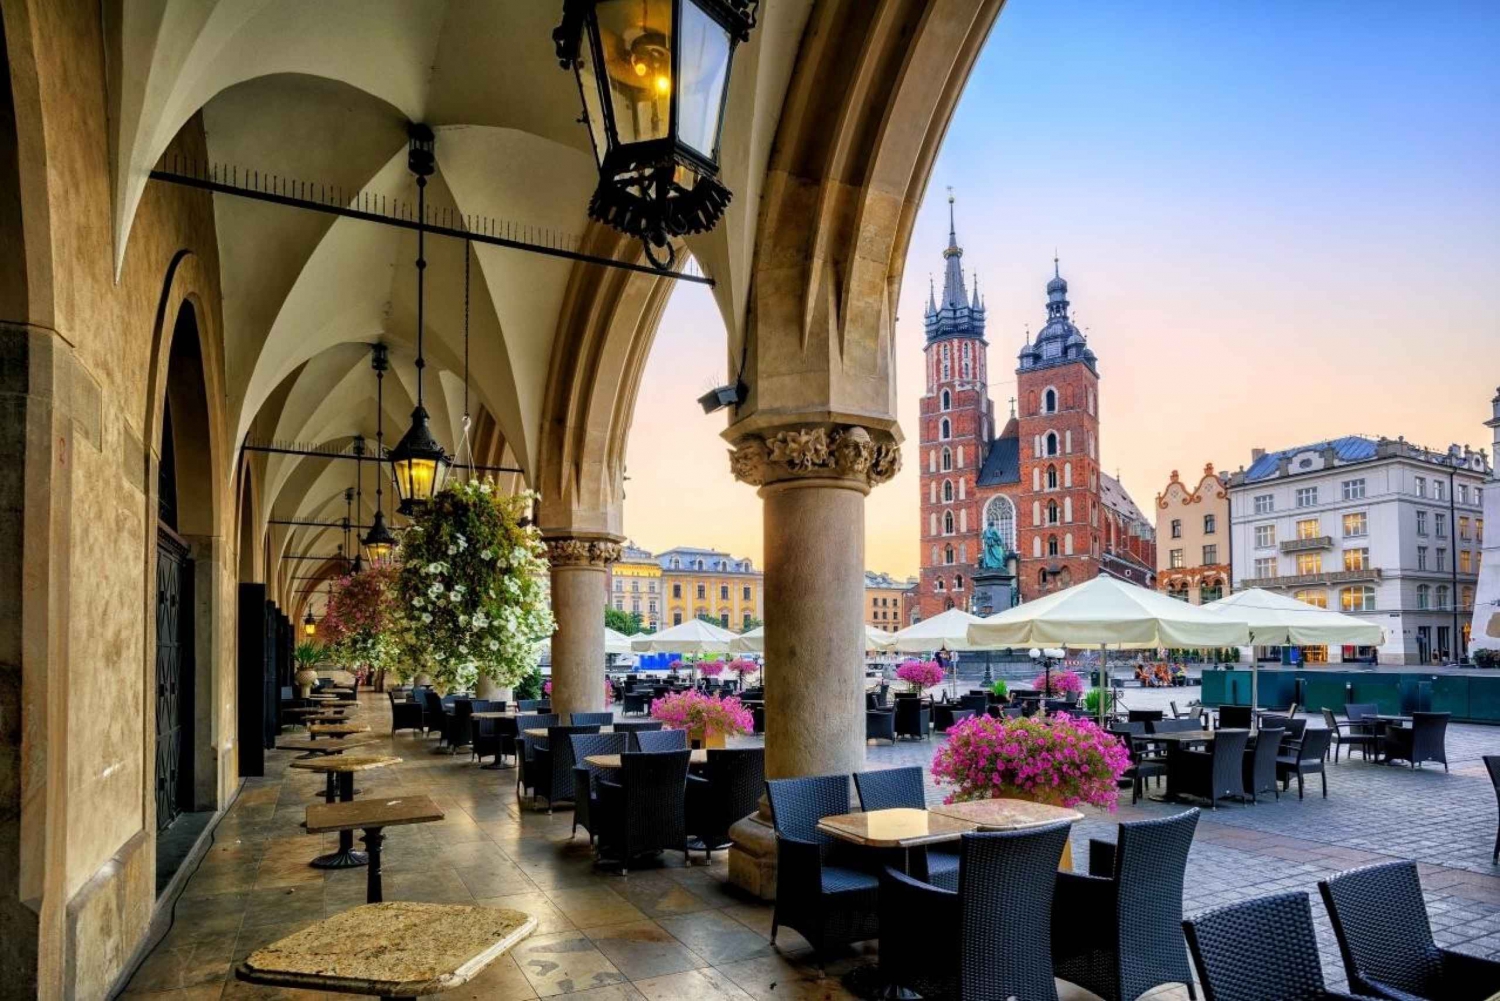 Krakau: Tour durch die Marienkirche und das unterirdische Rynek-Museum